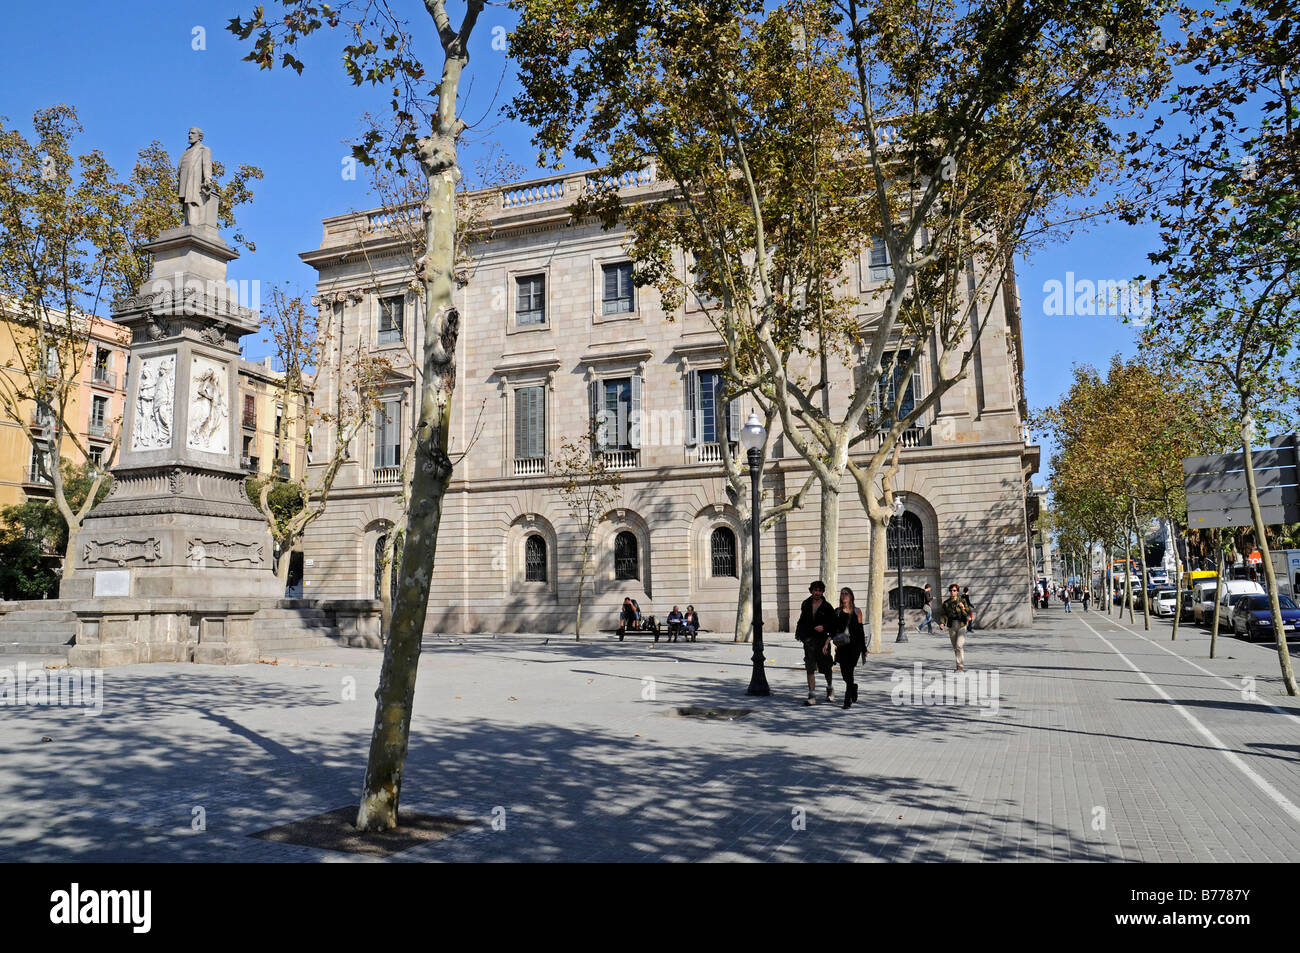 Denkmal, Antoni Lopez, Palacio De La Llotja de Mar, ehemalige Börse, Barcelona, Katalonien, Spanien, Europa Stockfoto